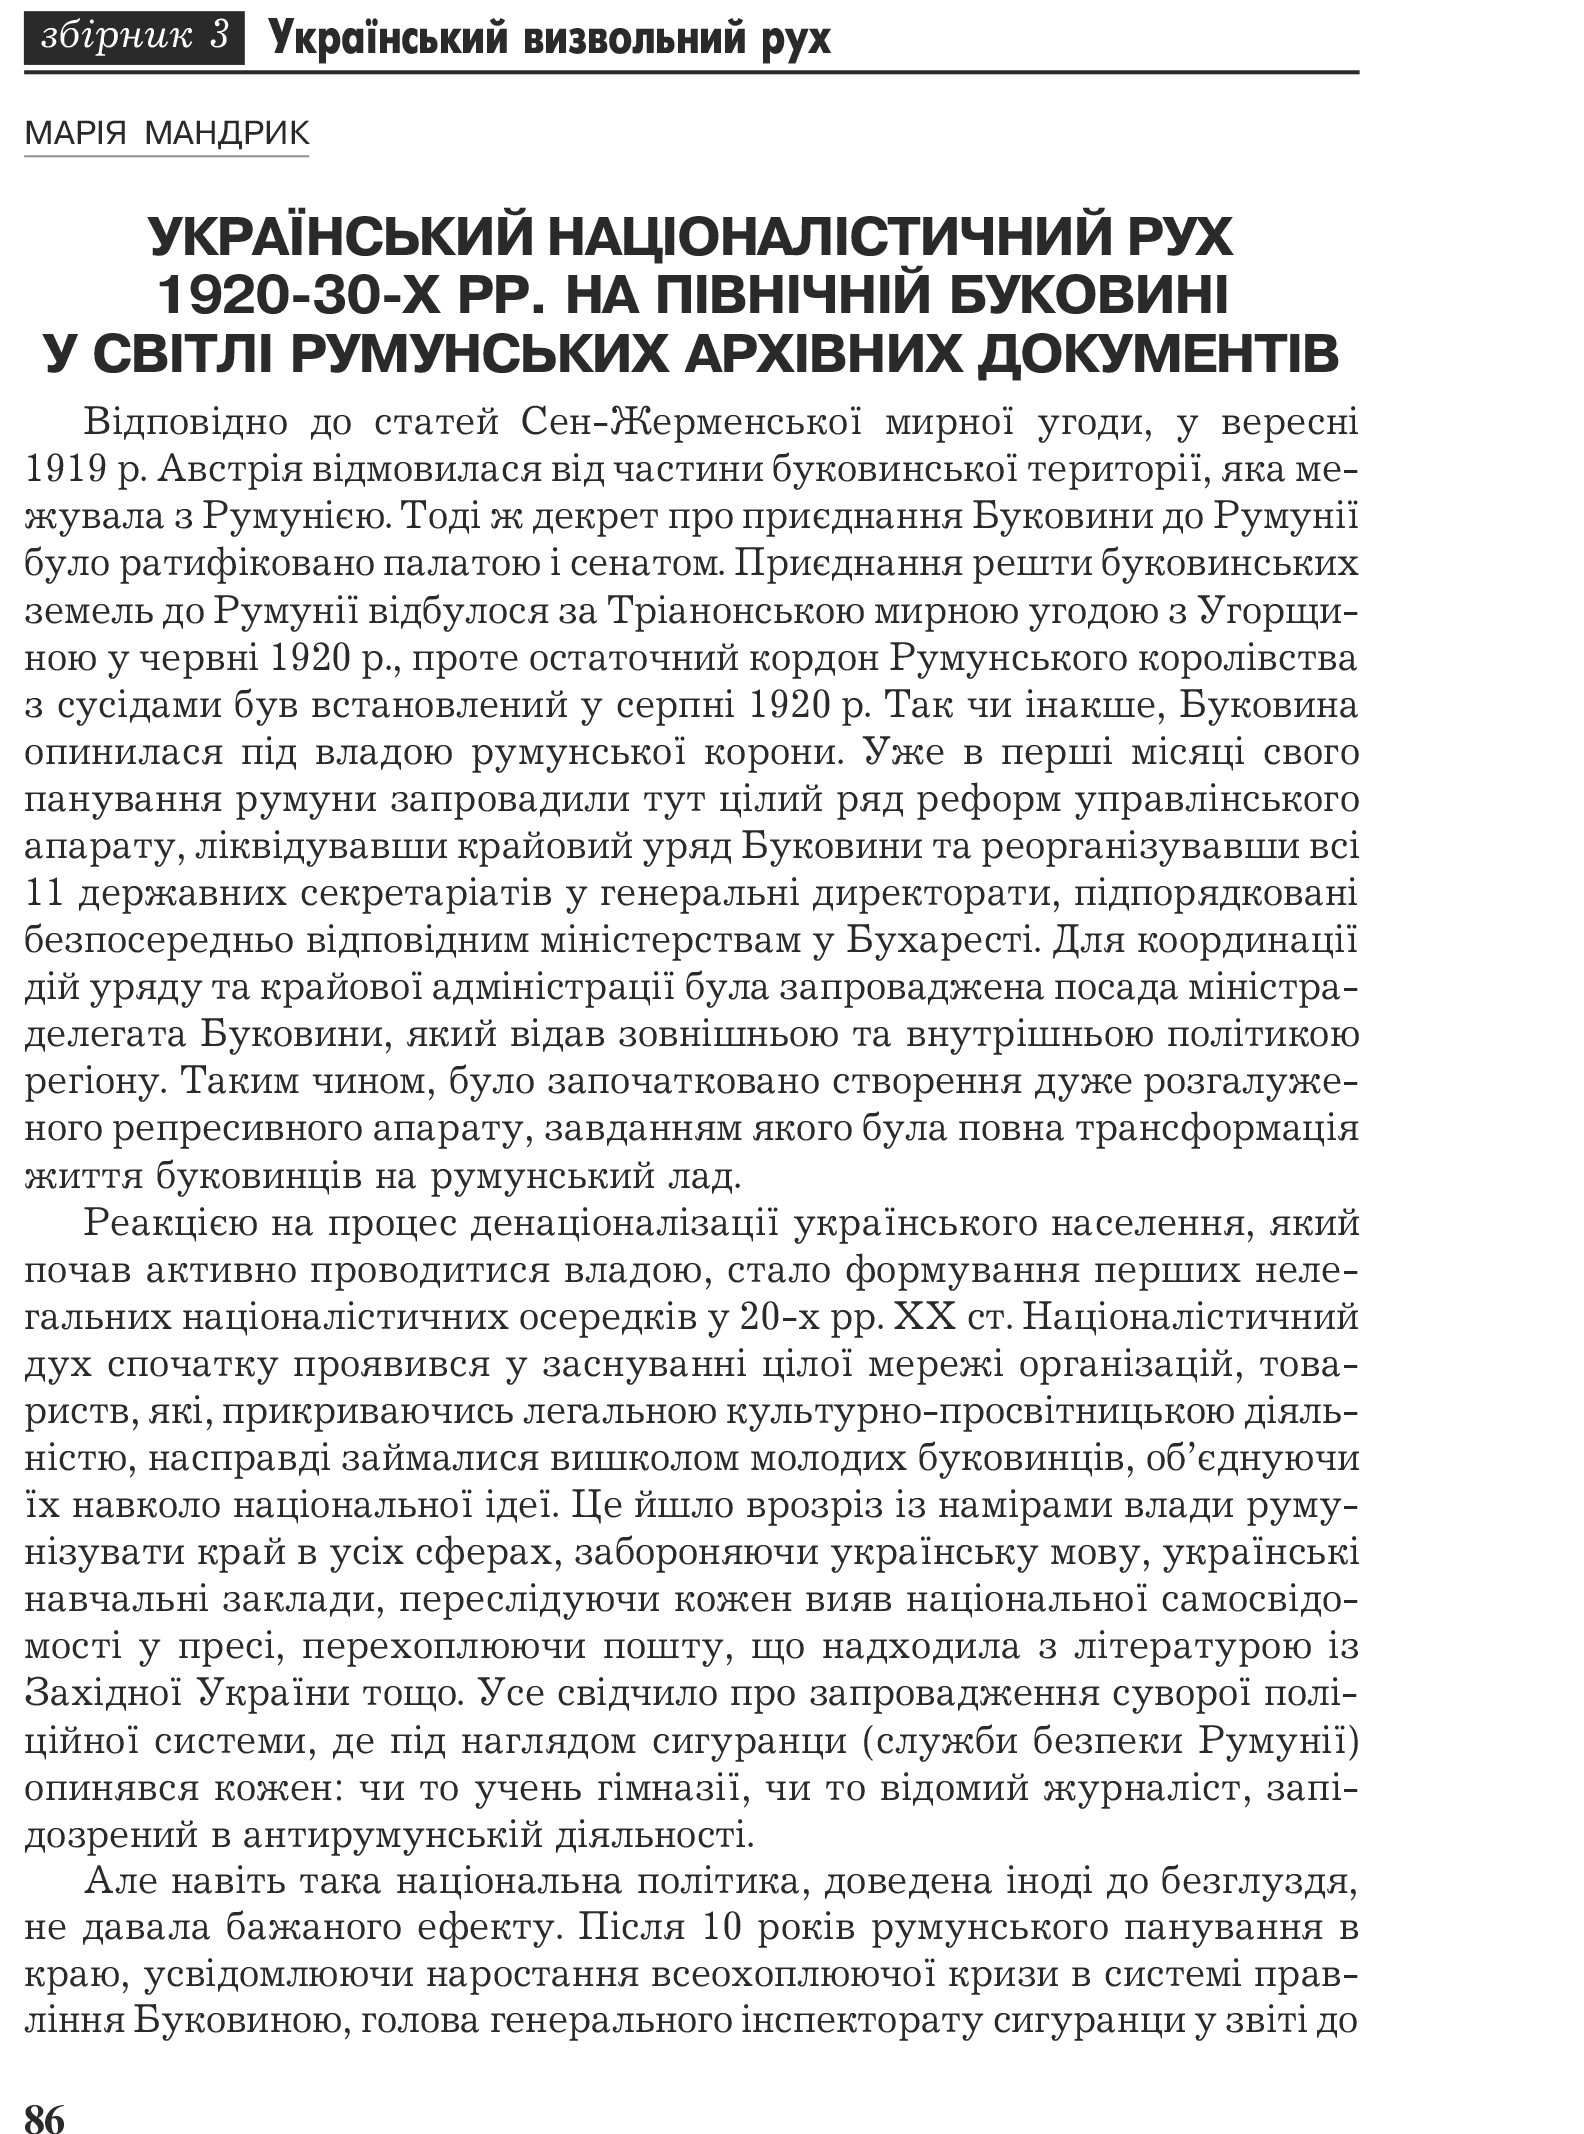 Український визвольний рух №3, ст. 86 - 97